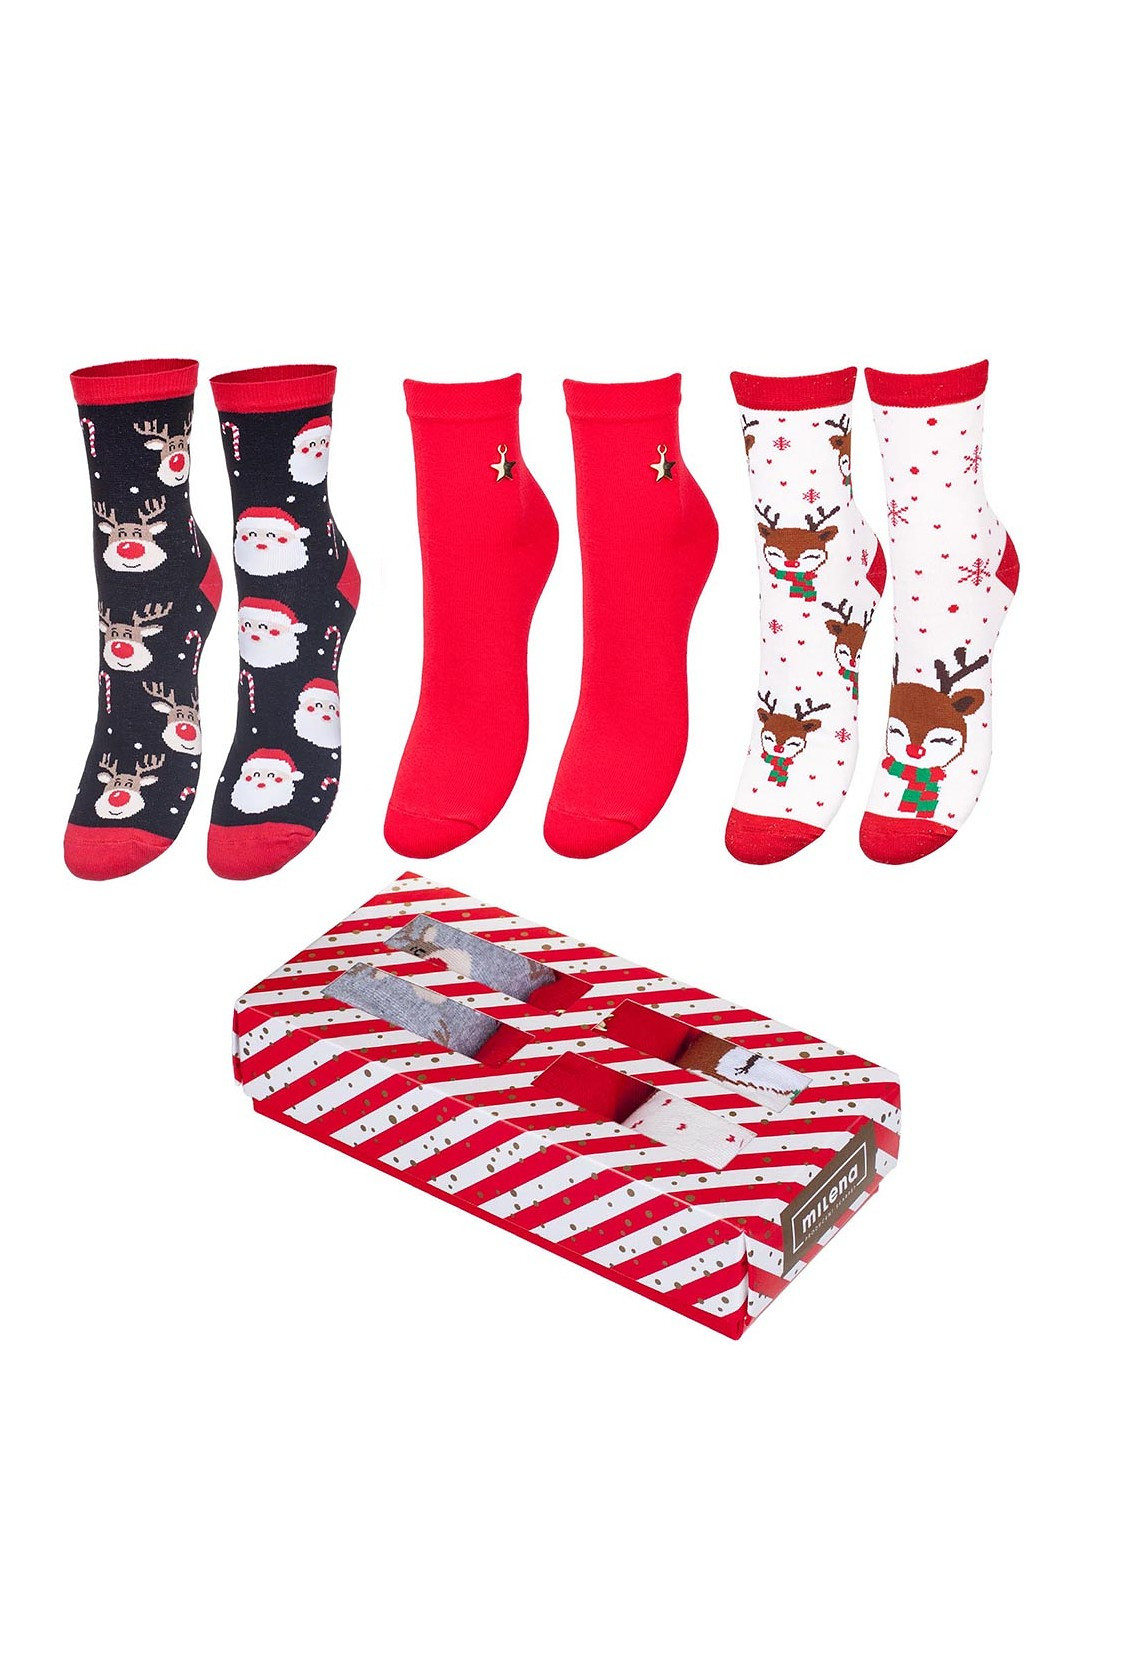 Dámské ponožky Milena Vánoční sada, krabička A'3 Barva: mix barev-mix designu, Velikost: 37-41